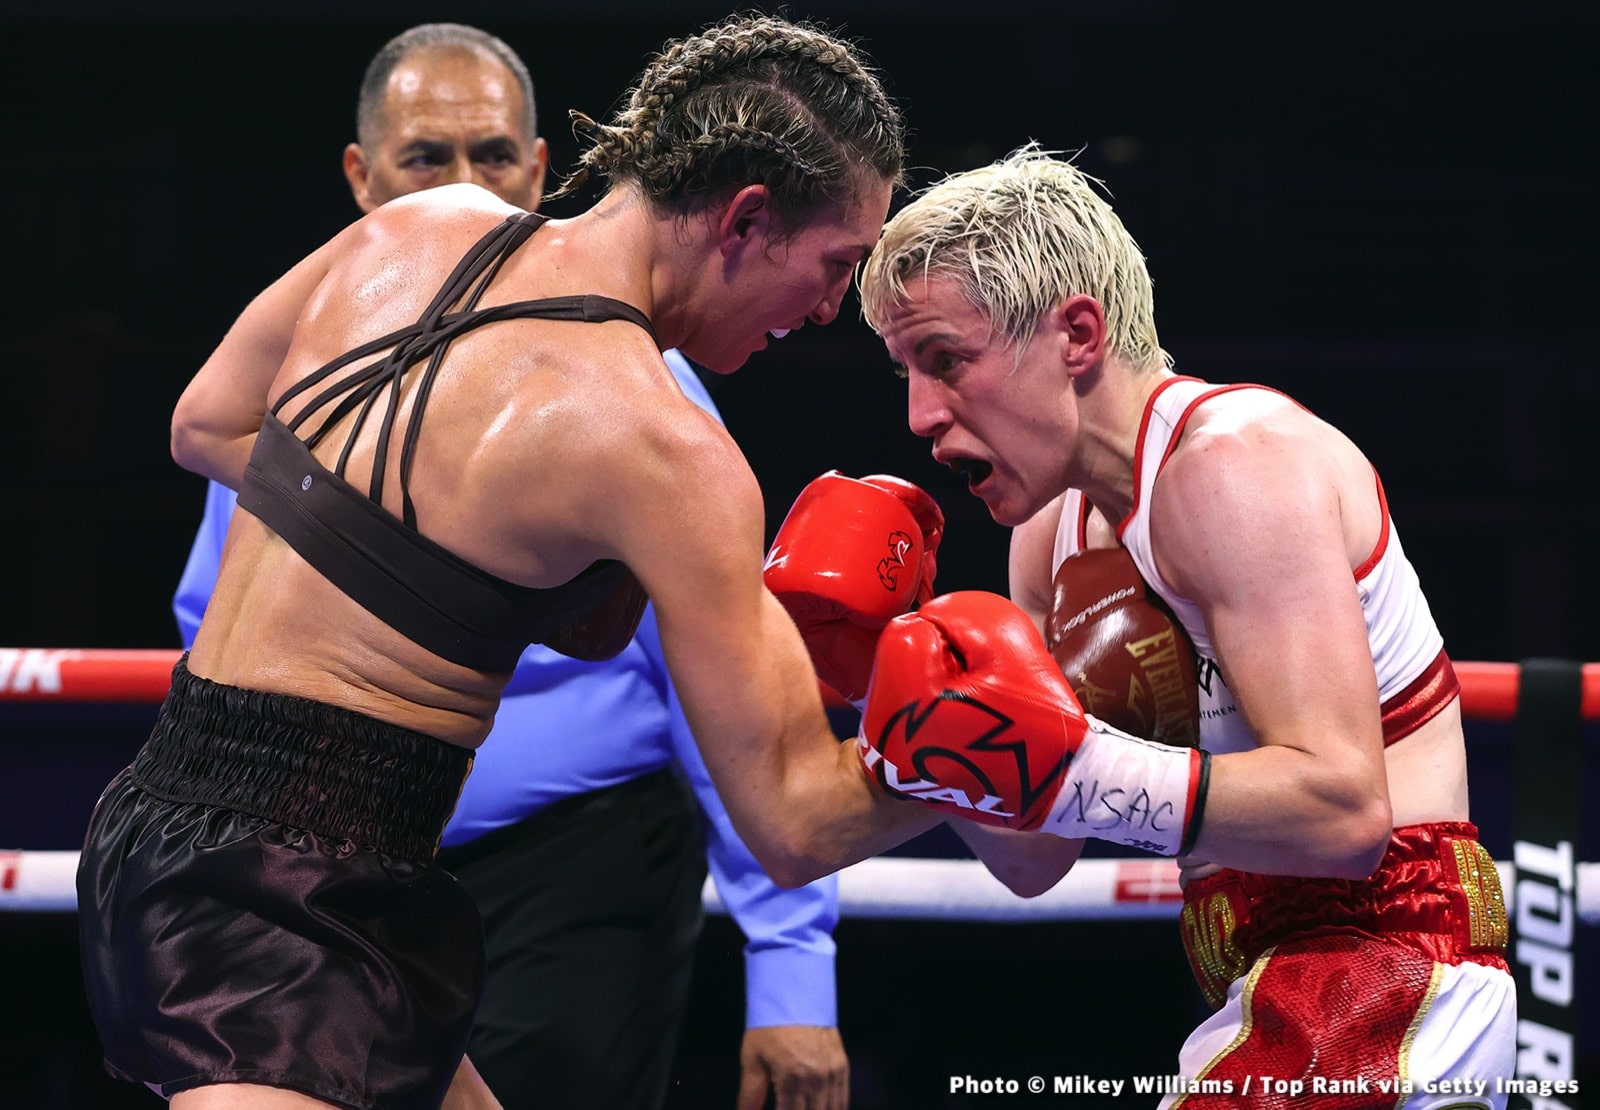 Mikaela Mayer boxing image / photo